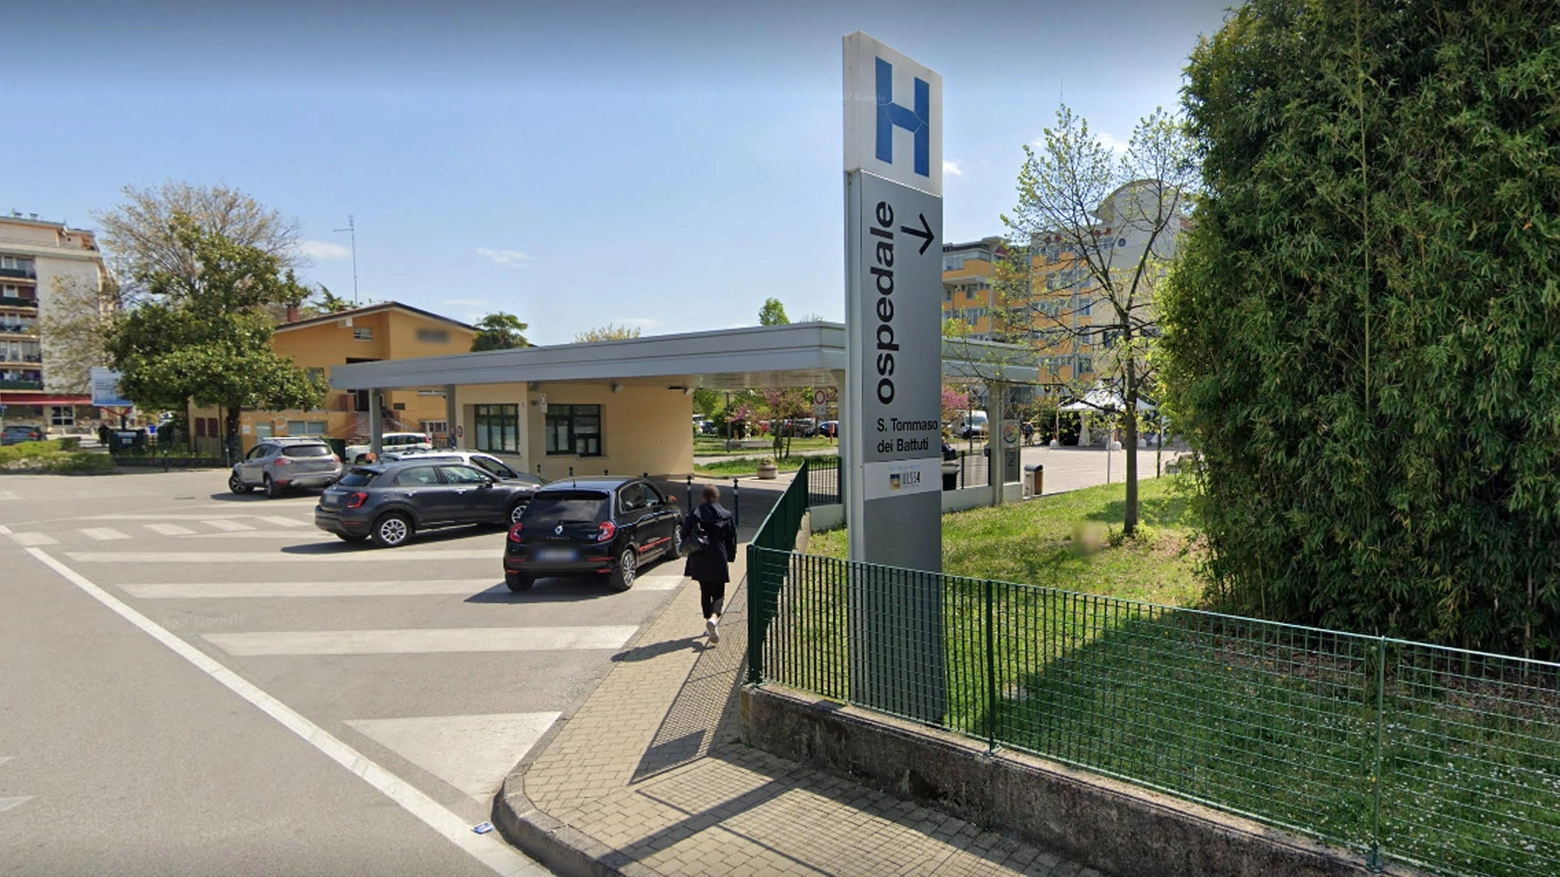 L'ospedale di Portogruaro, dove è stato portato il bimbo 18 mesi morto per lo schiacciamento della testa